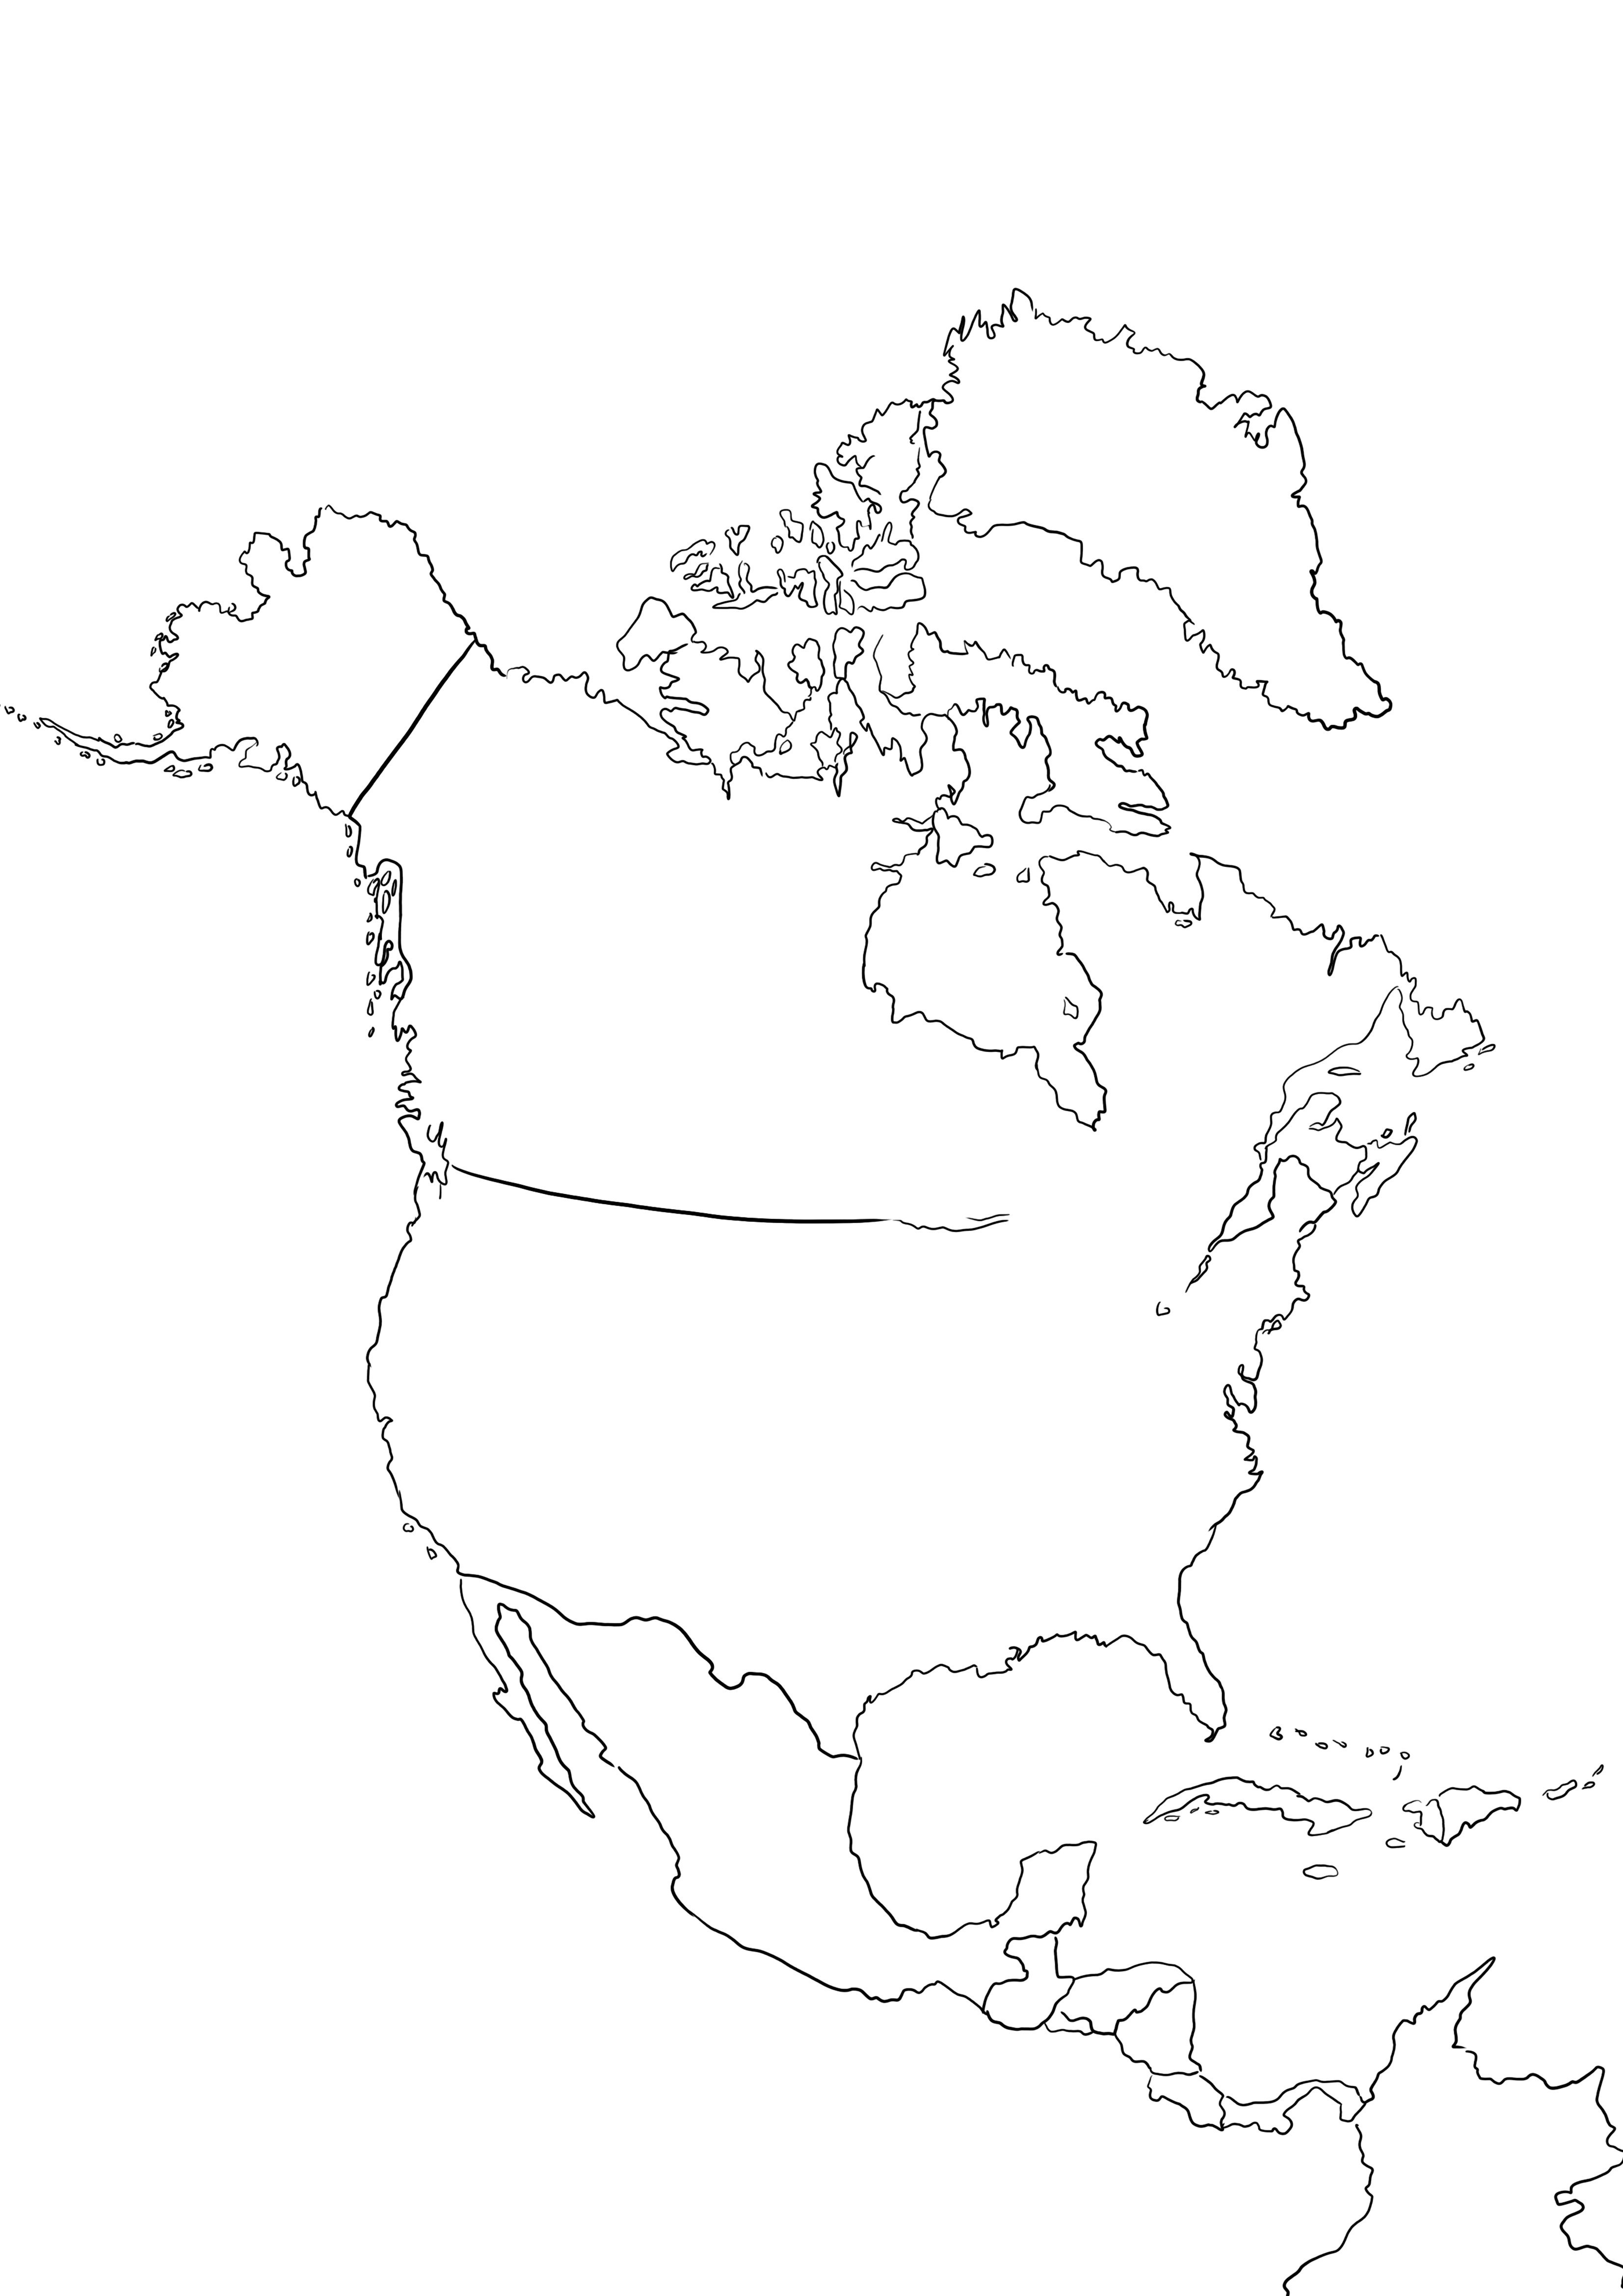 Amerika Utara Peta gambar cetak dan mewarnai gratis untuk anak-anak untuk belajar tentang negara